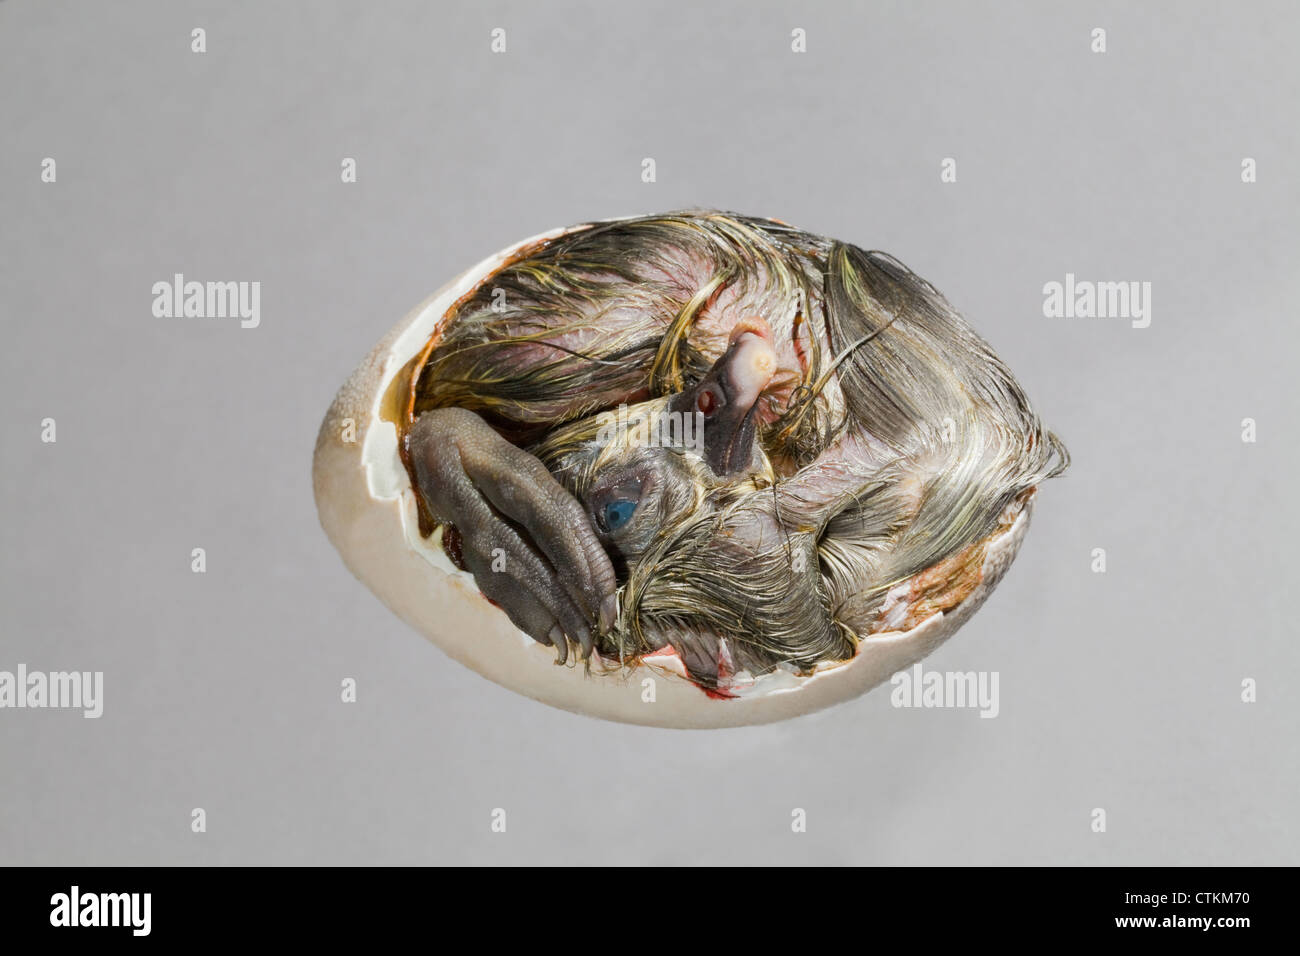 Anatra (Anas platyrhynchos); anatroccolo ancora nel guscio dell'uovo, sezione rimossa. Conosciuta come 'Dead in shell', da aviculturists. Foto Stock